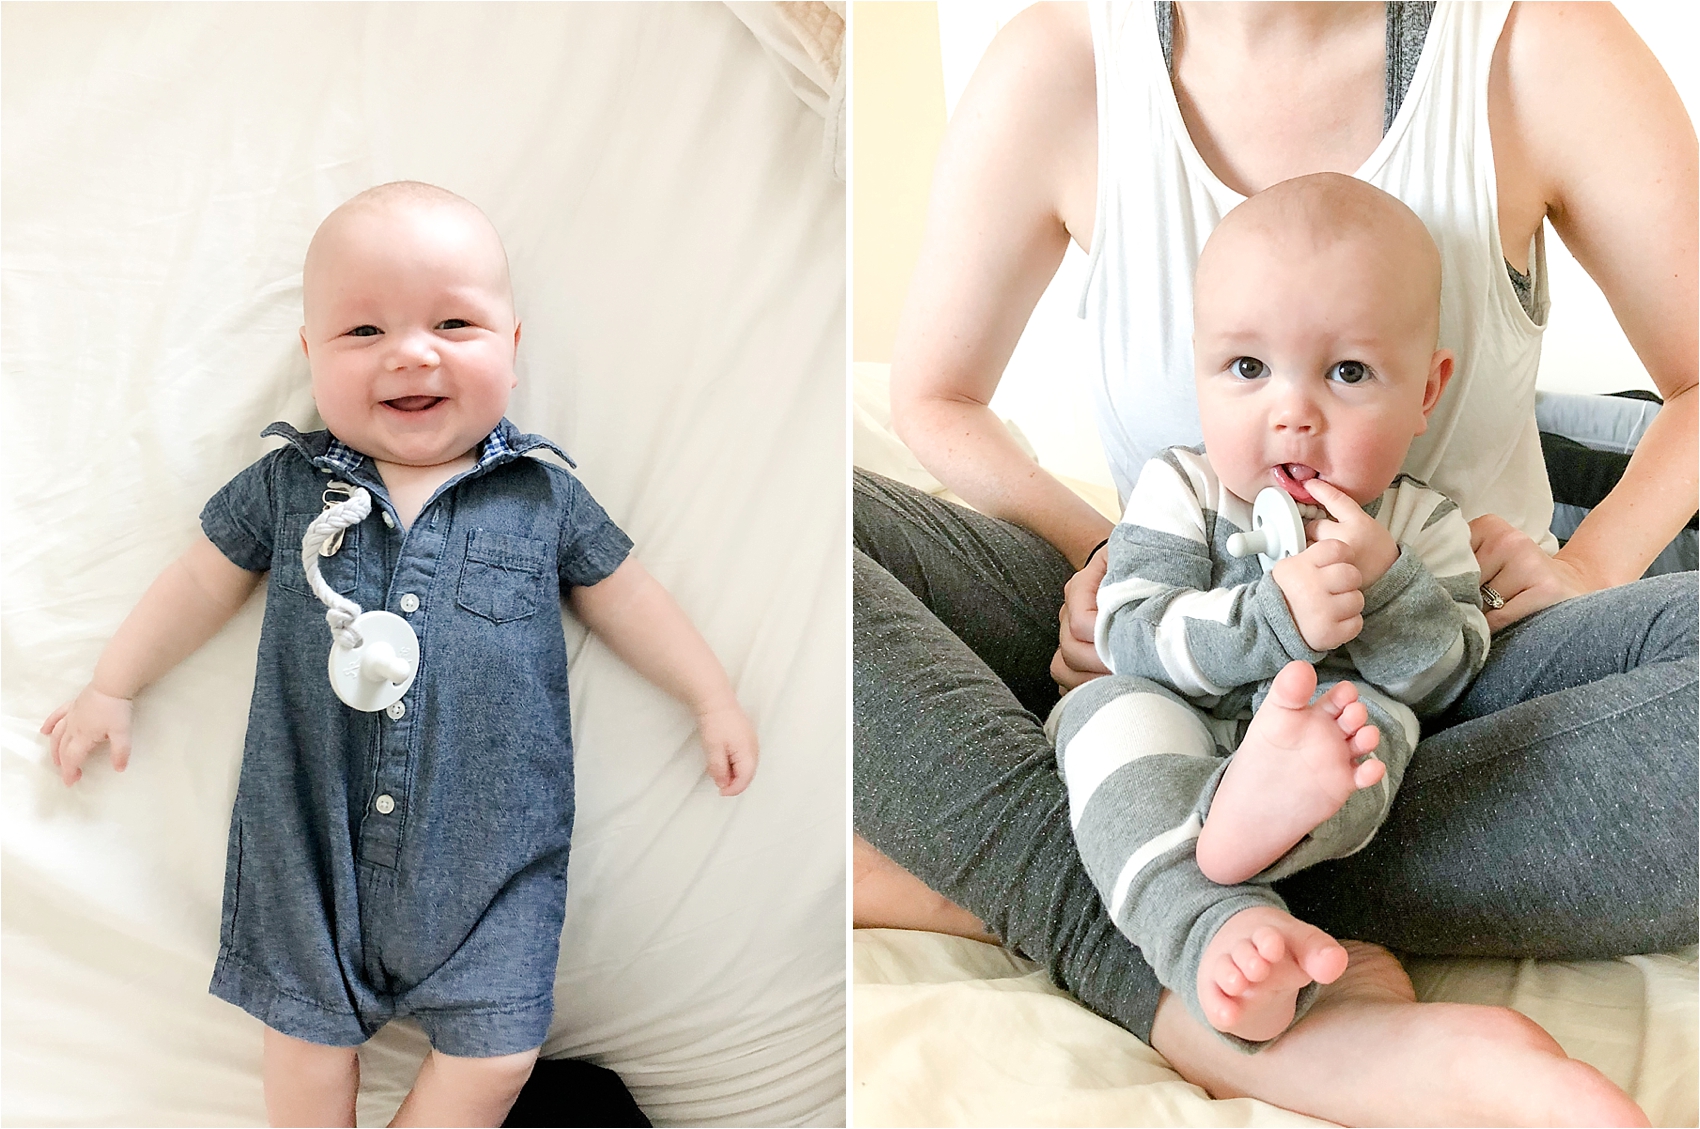 Amy & Jordan's Top 25 Baby Registry List